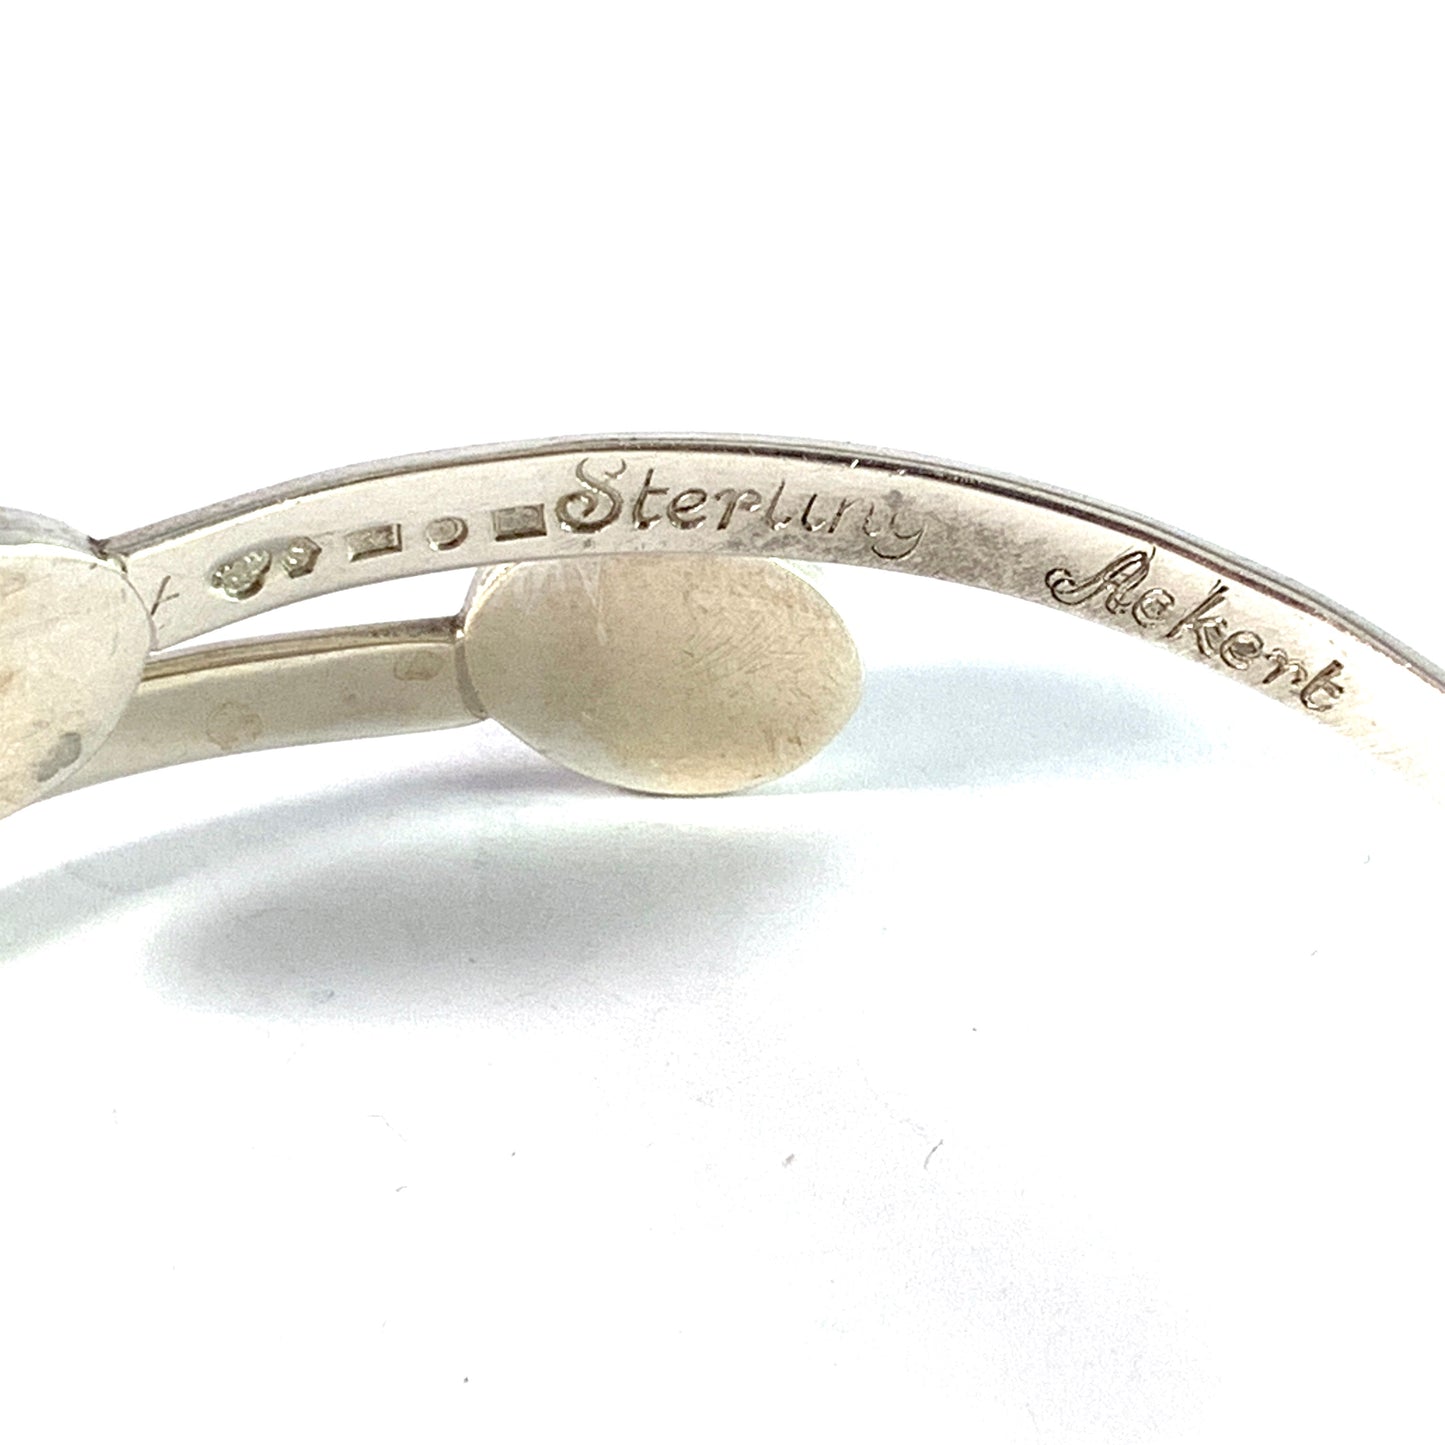 Acke R Tötterman, Sweden 1955. Vintage Sterling Silver Hematite Arm Bracelet. Signed